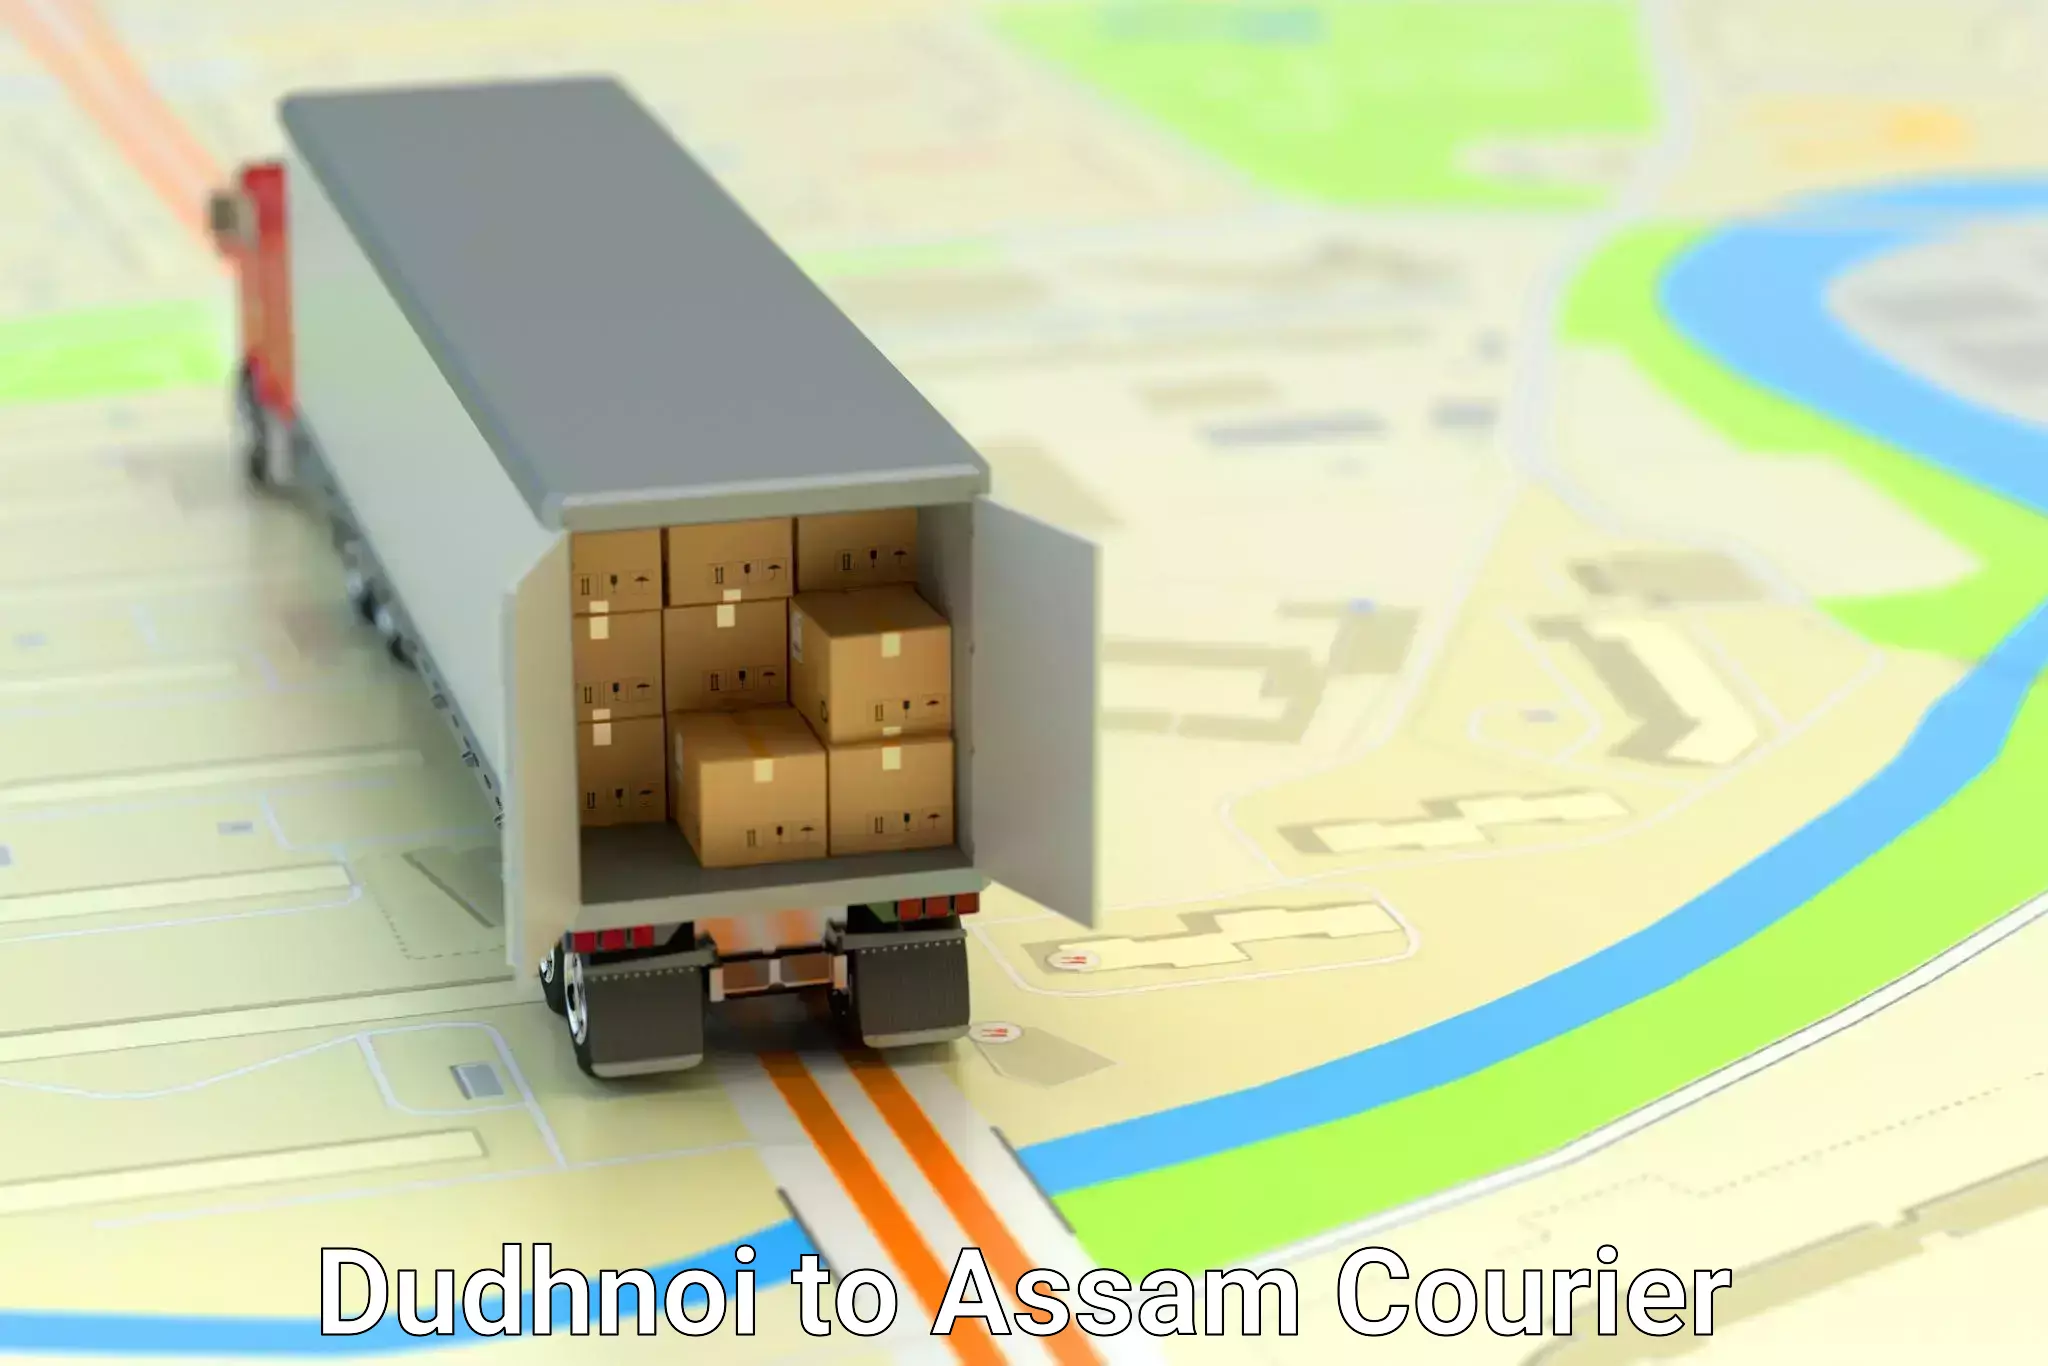 Efficient cargo services Dudhnoi to Agomani